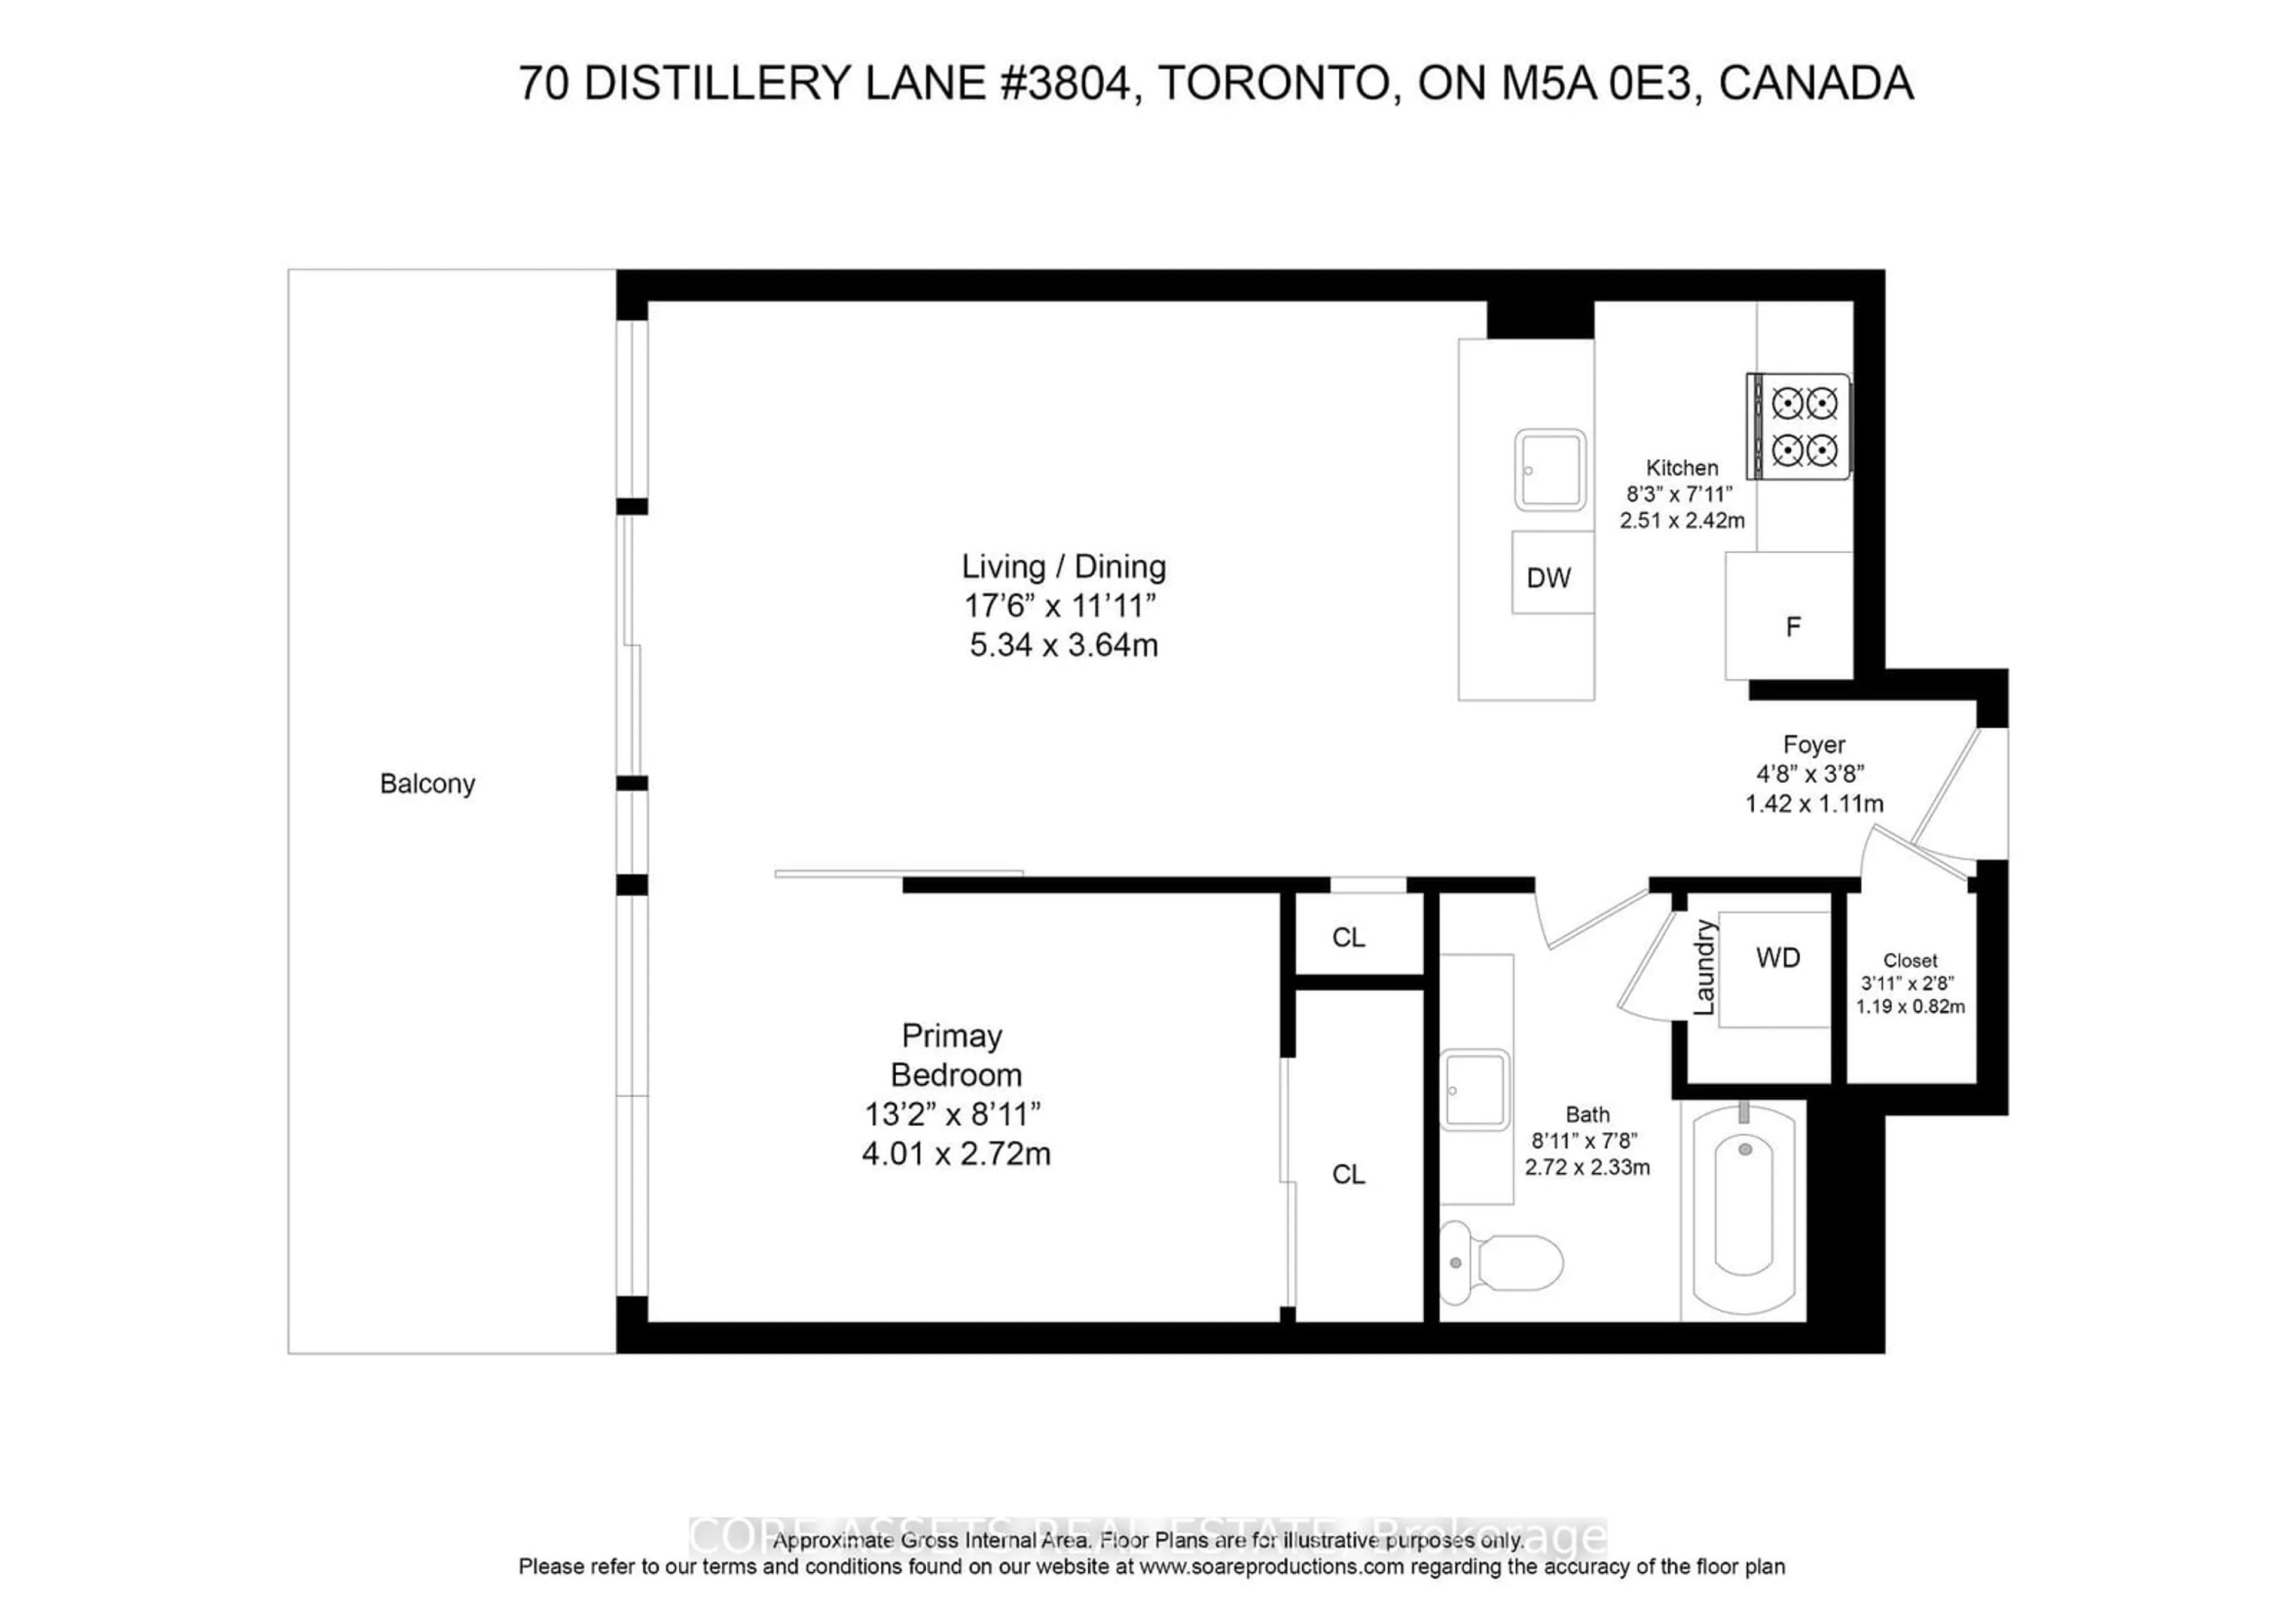 Floor plan for 70 Distillery Lane #3804, Toronto Ontario M5A 0E3